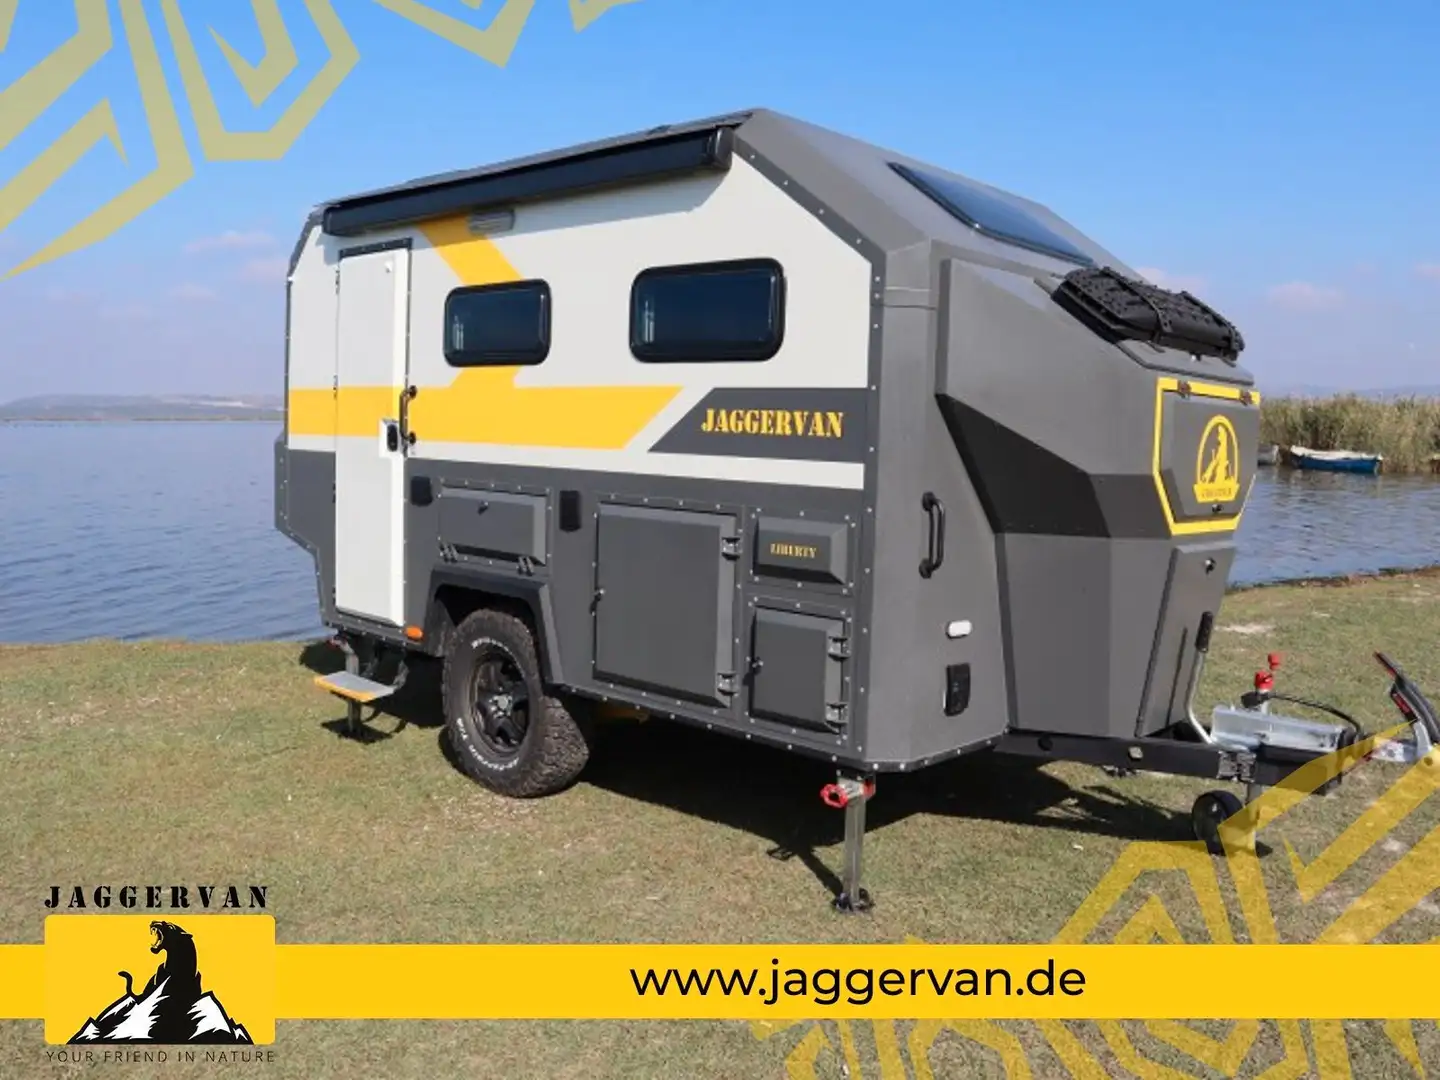 Overig Offroad Wohnwagen Jaggervan 520x207x255cm 2000kg - 1